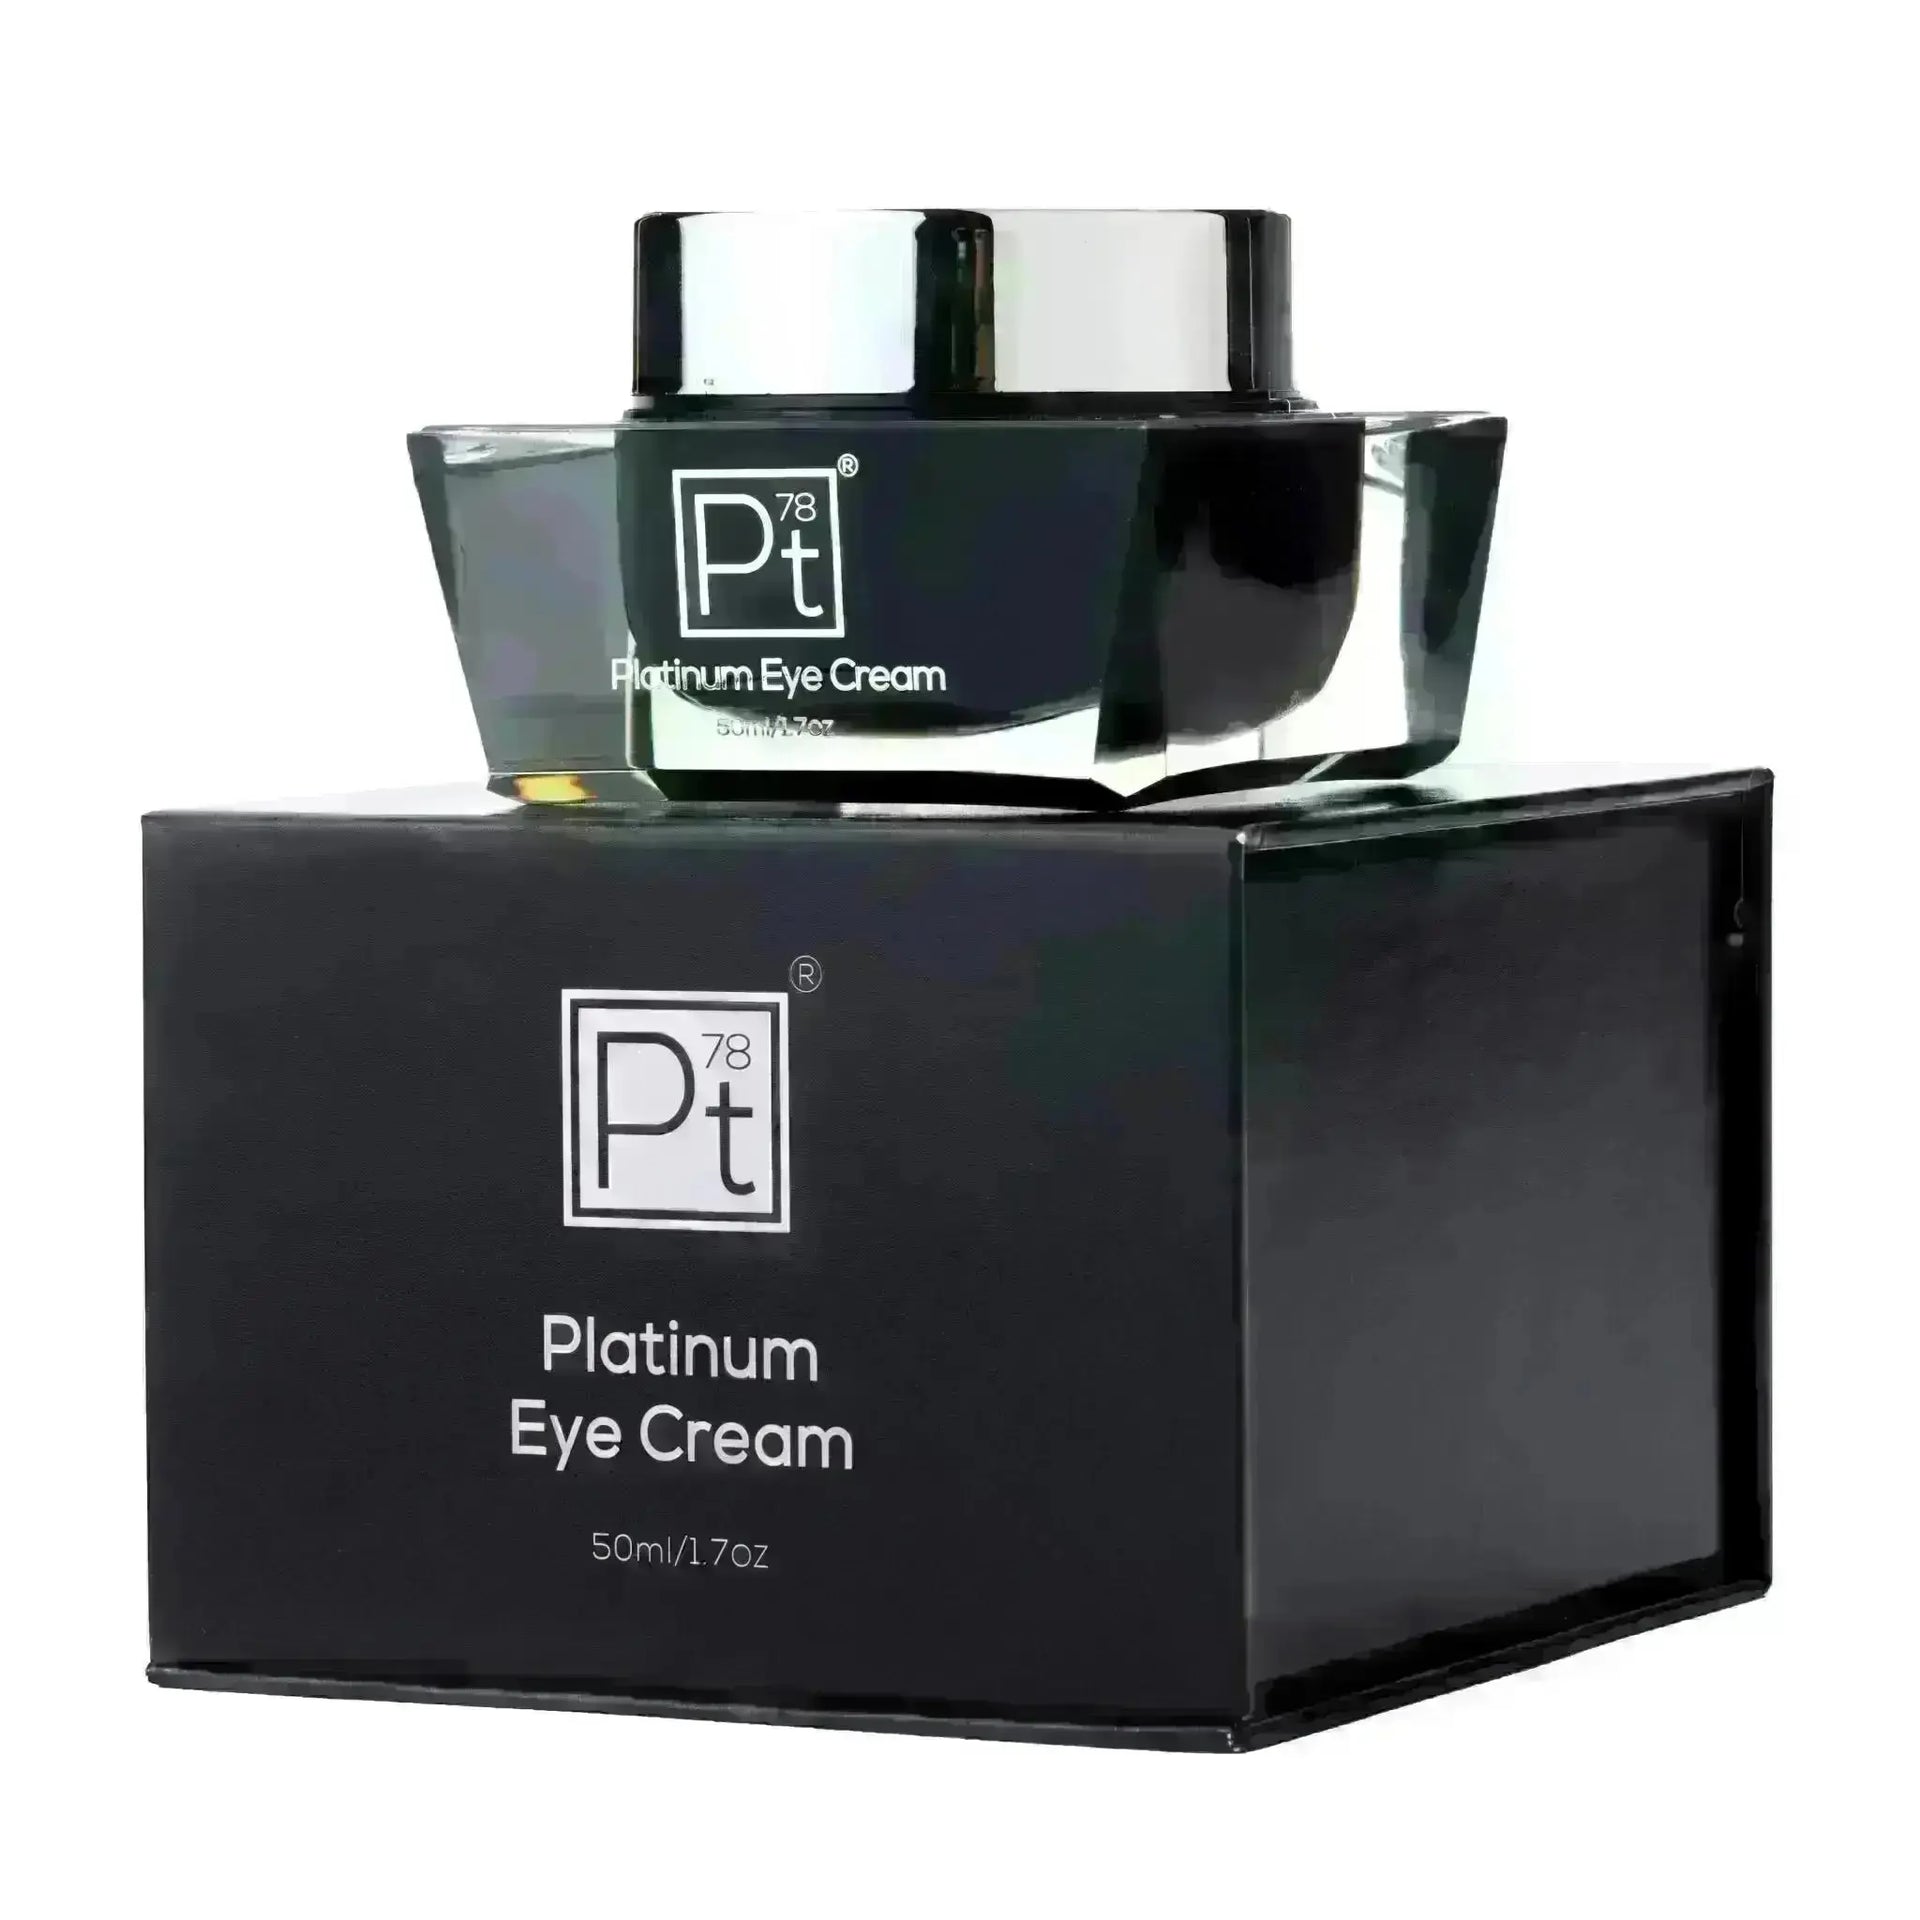 Platinum Eye Cream - Platinum Deluxe Cosmetics